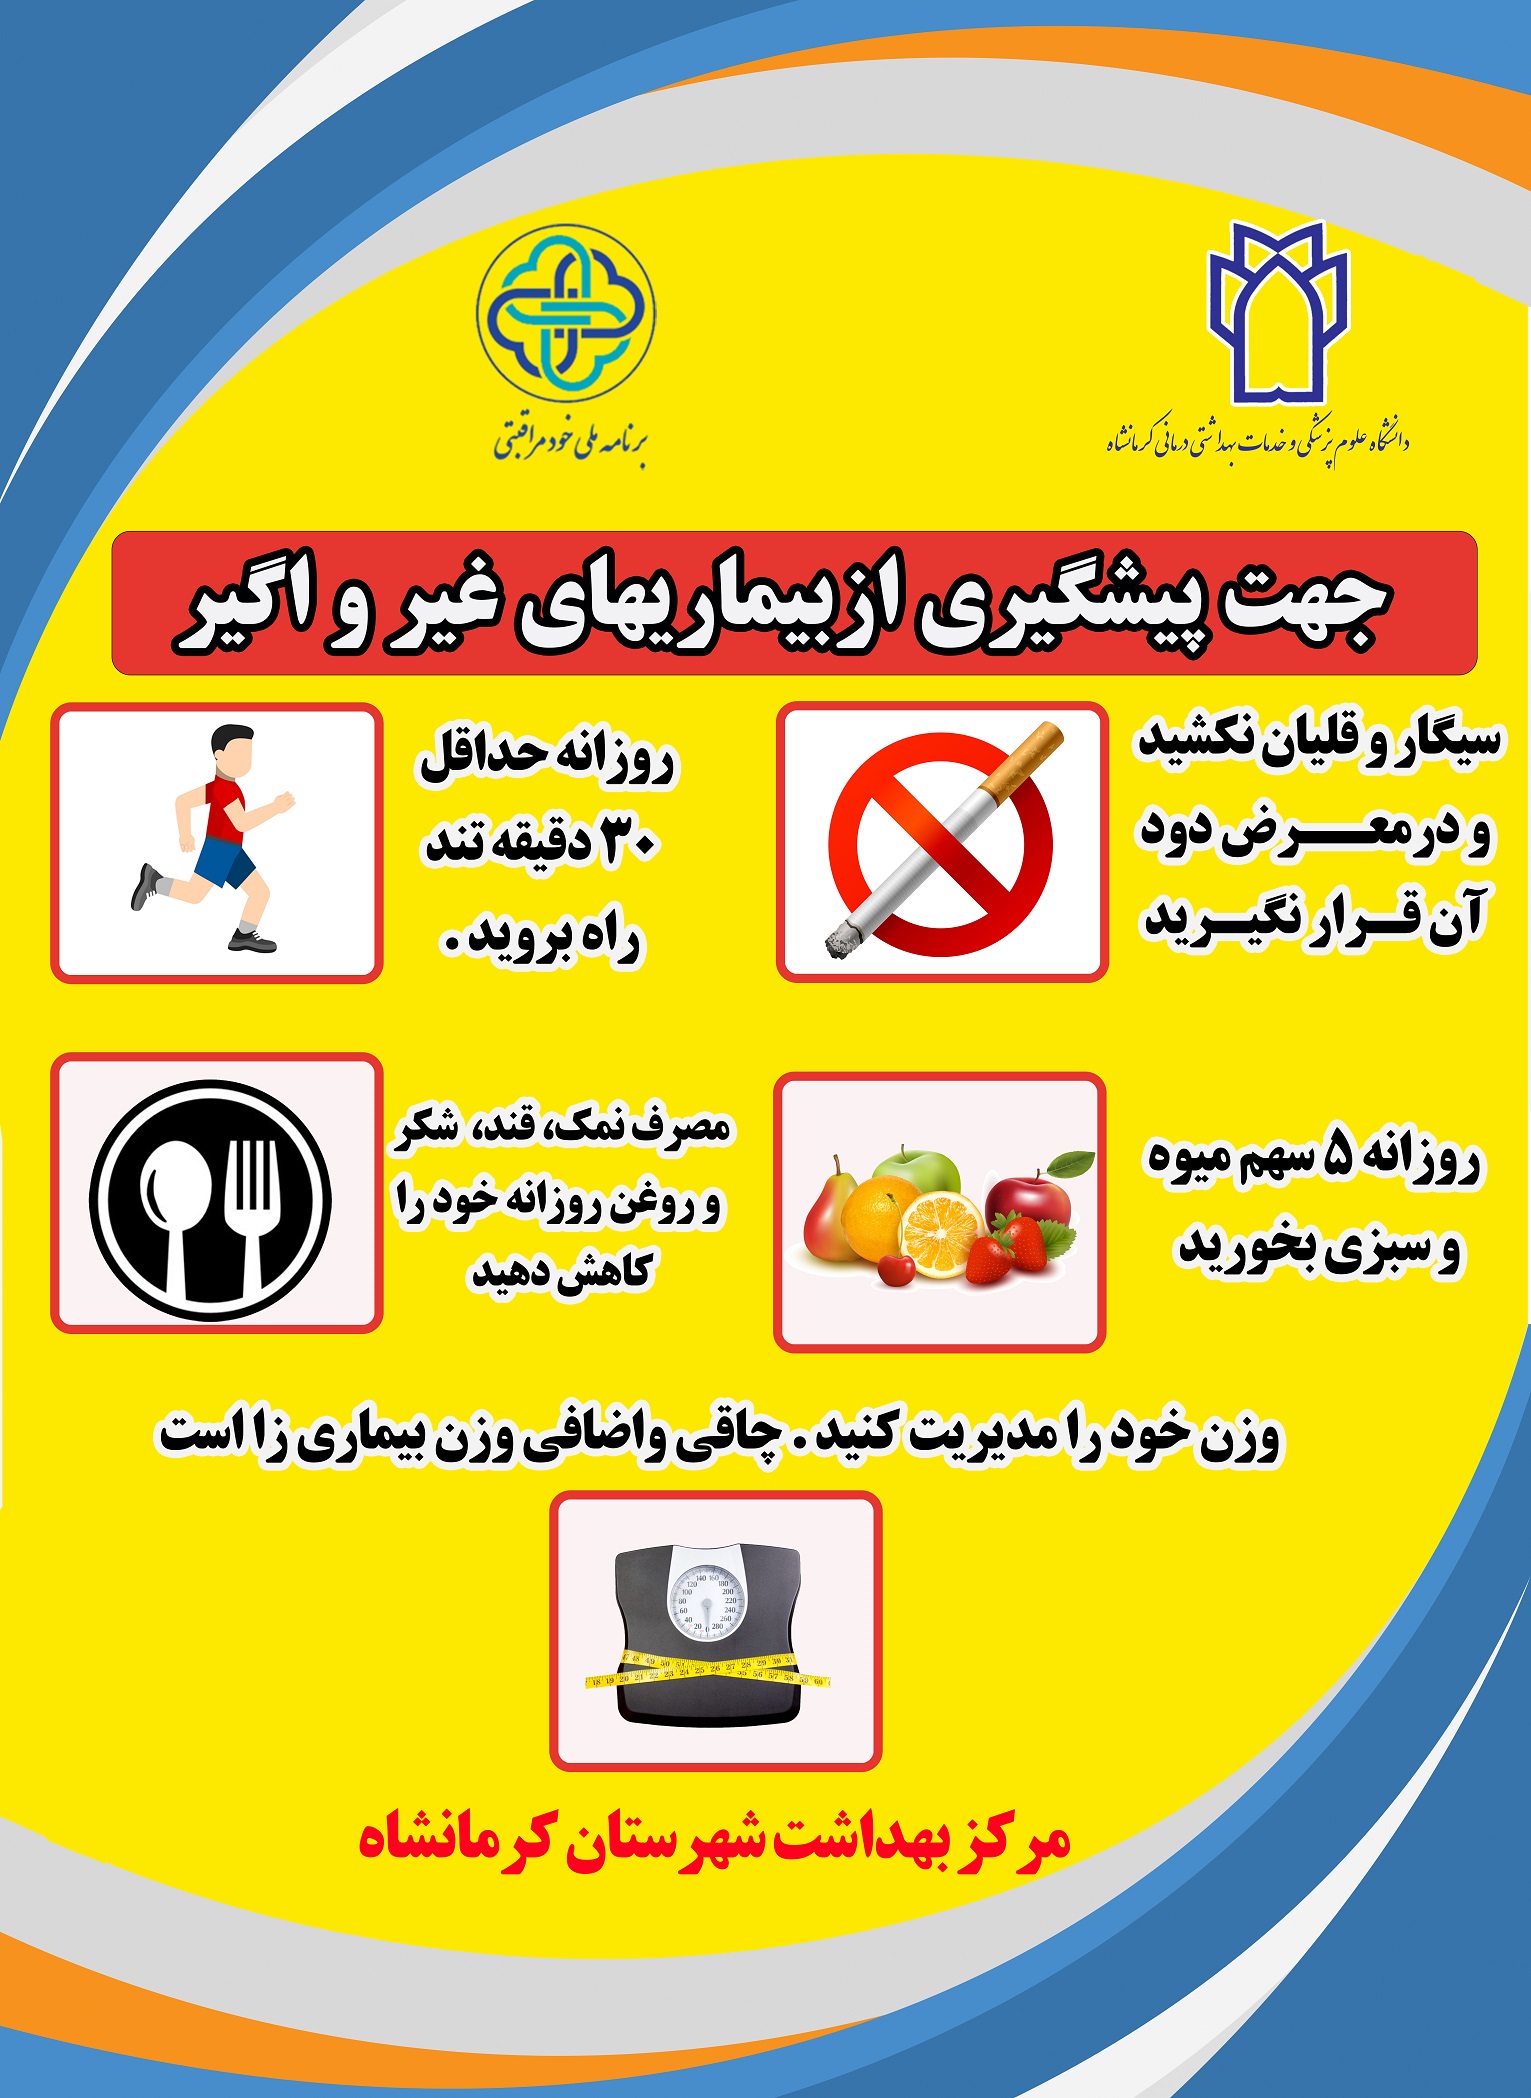 پوسترهای آموزشی مربوط خودمراقبتی شهرستان کرمانشاه 5